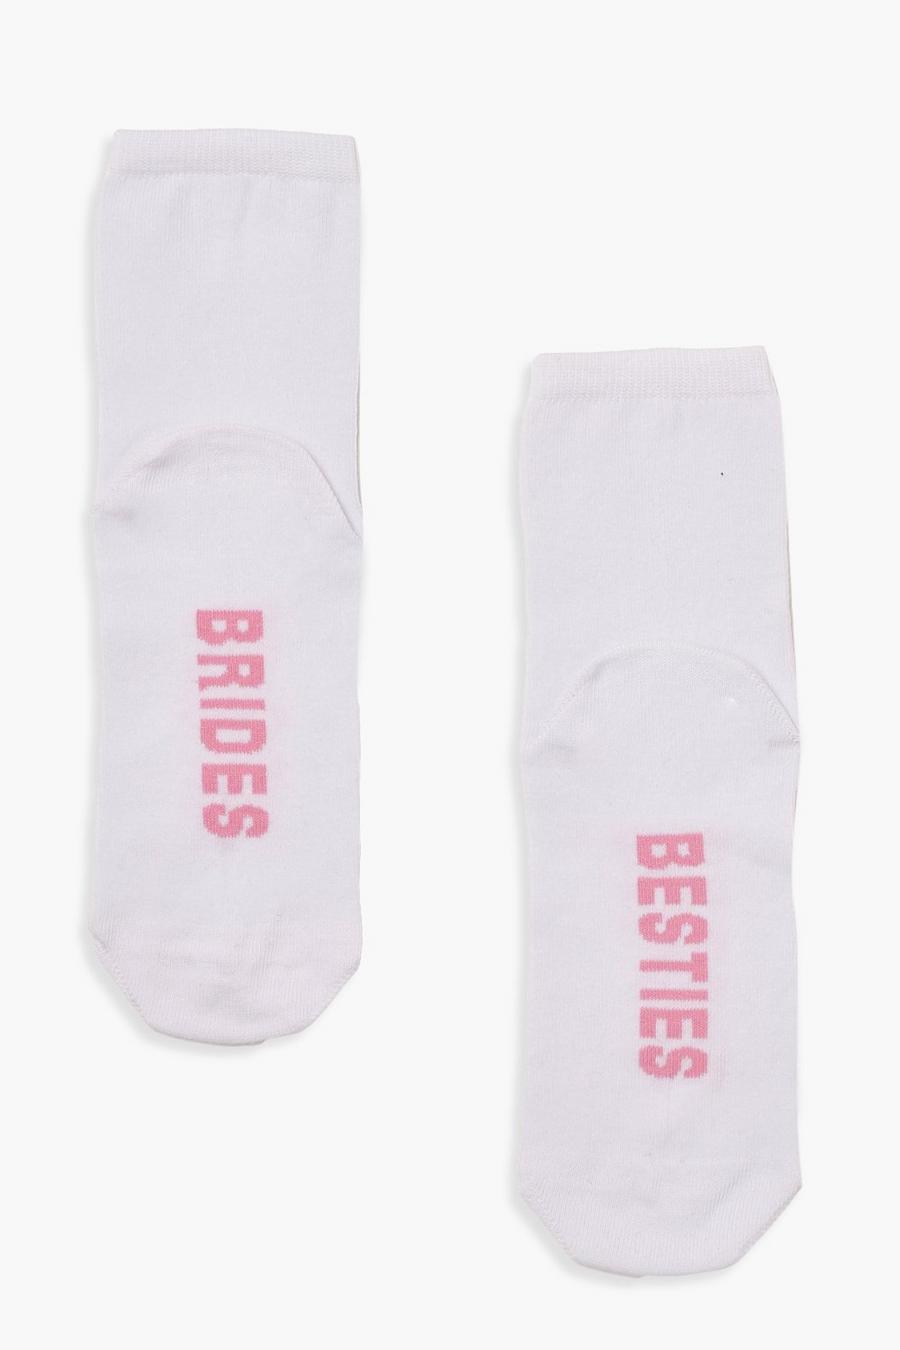 Bride Besties Socks | Boohoo UK